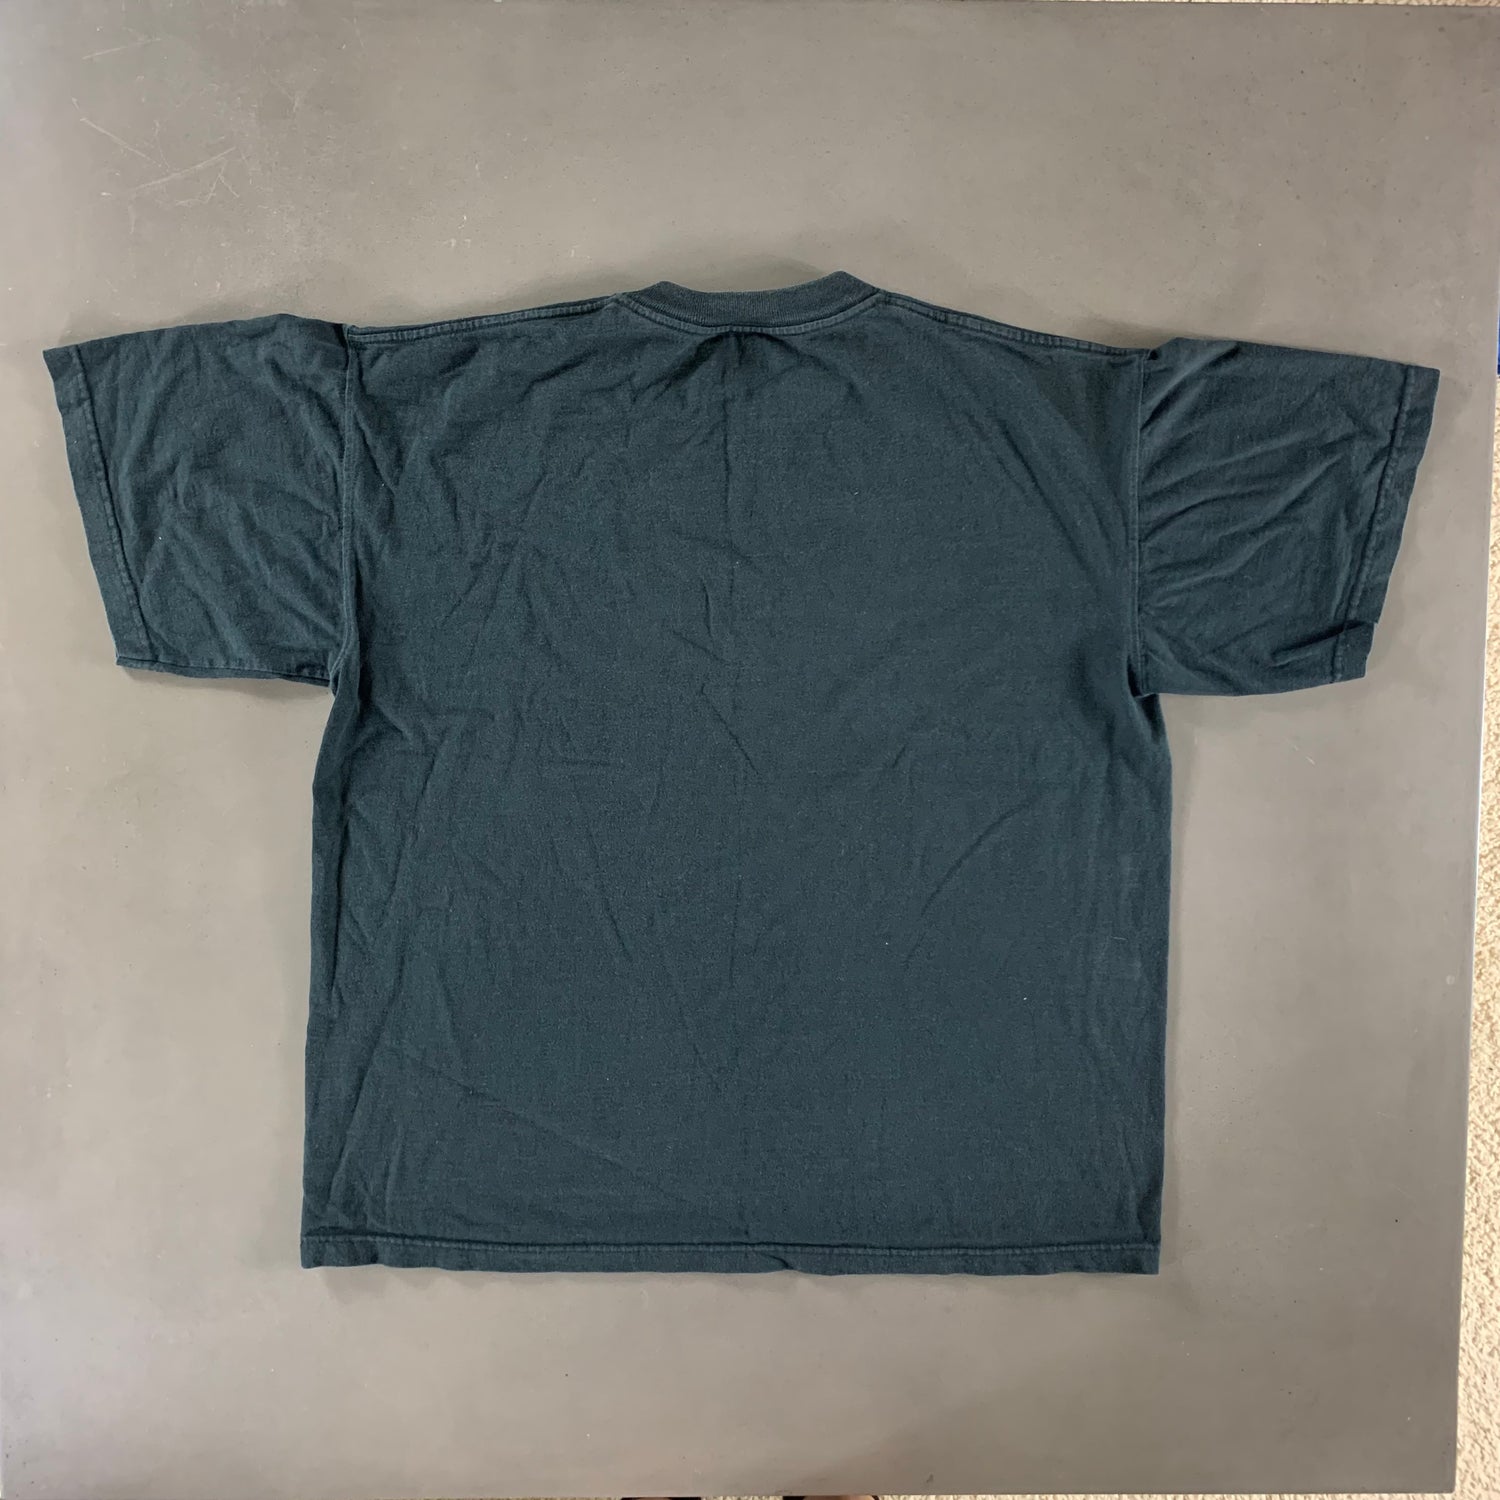 Vintage 1990s Philadelphia Flyers T-shirt size XL